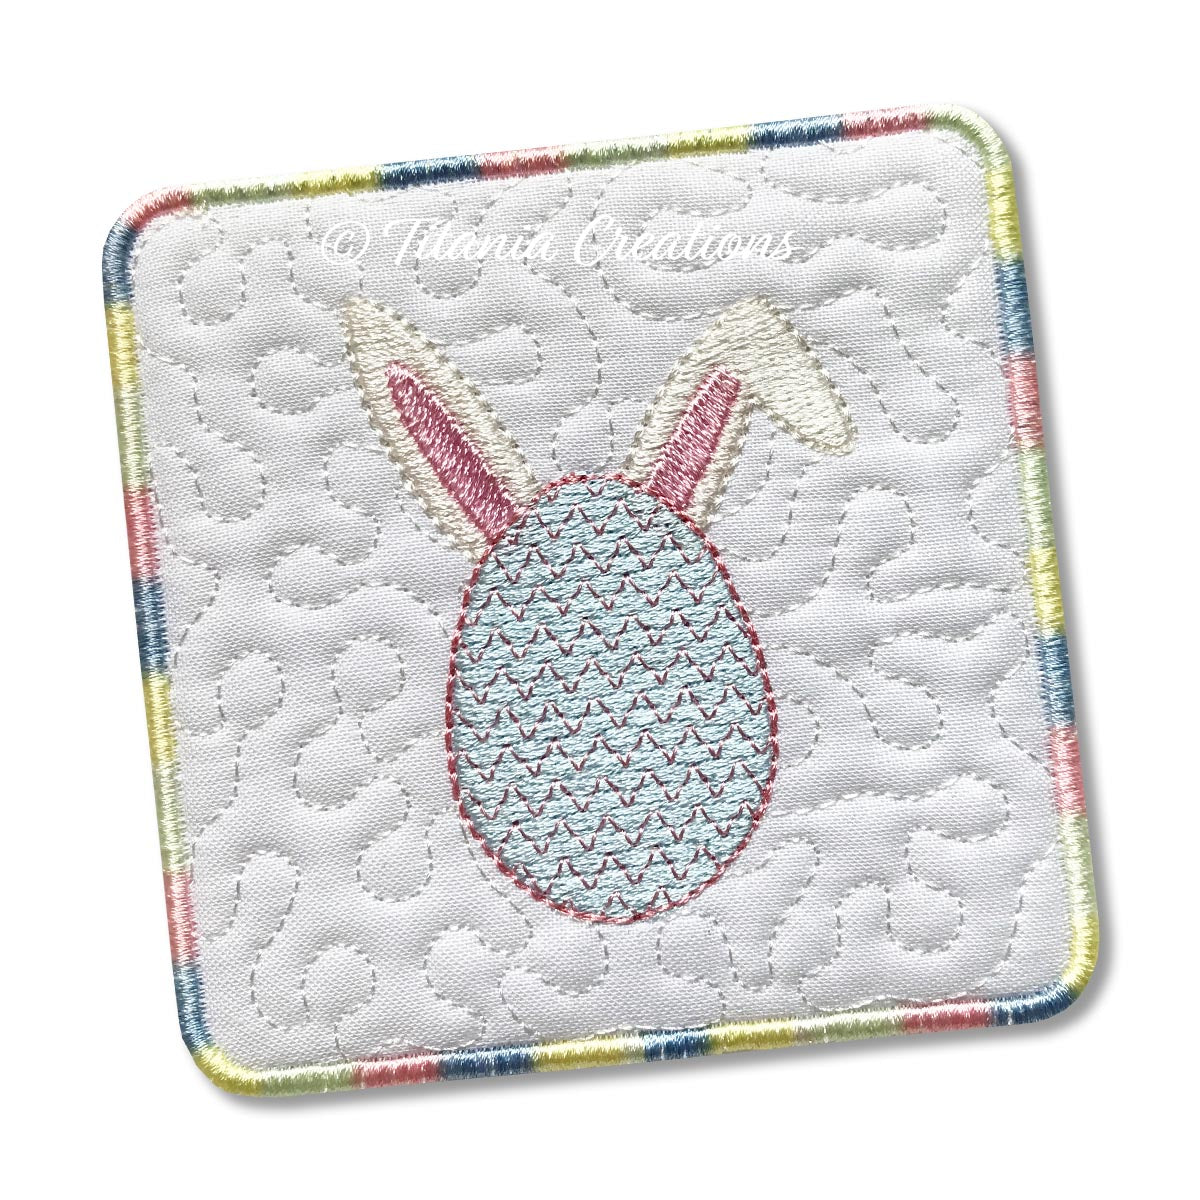 ITH Bunny Ears Egg Coaster 4x4